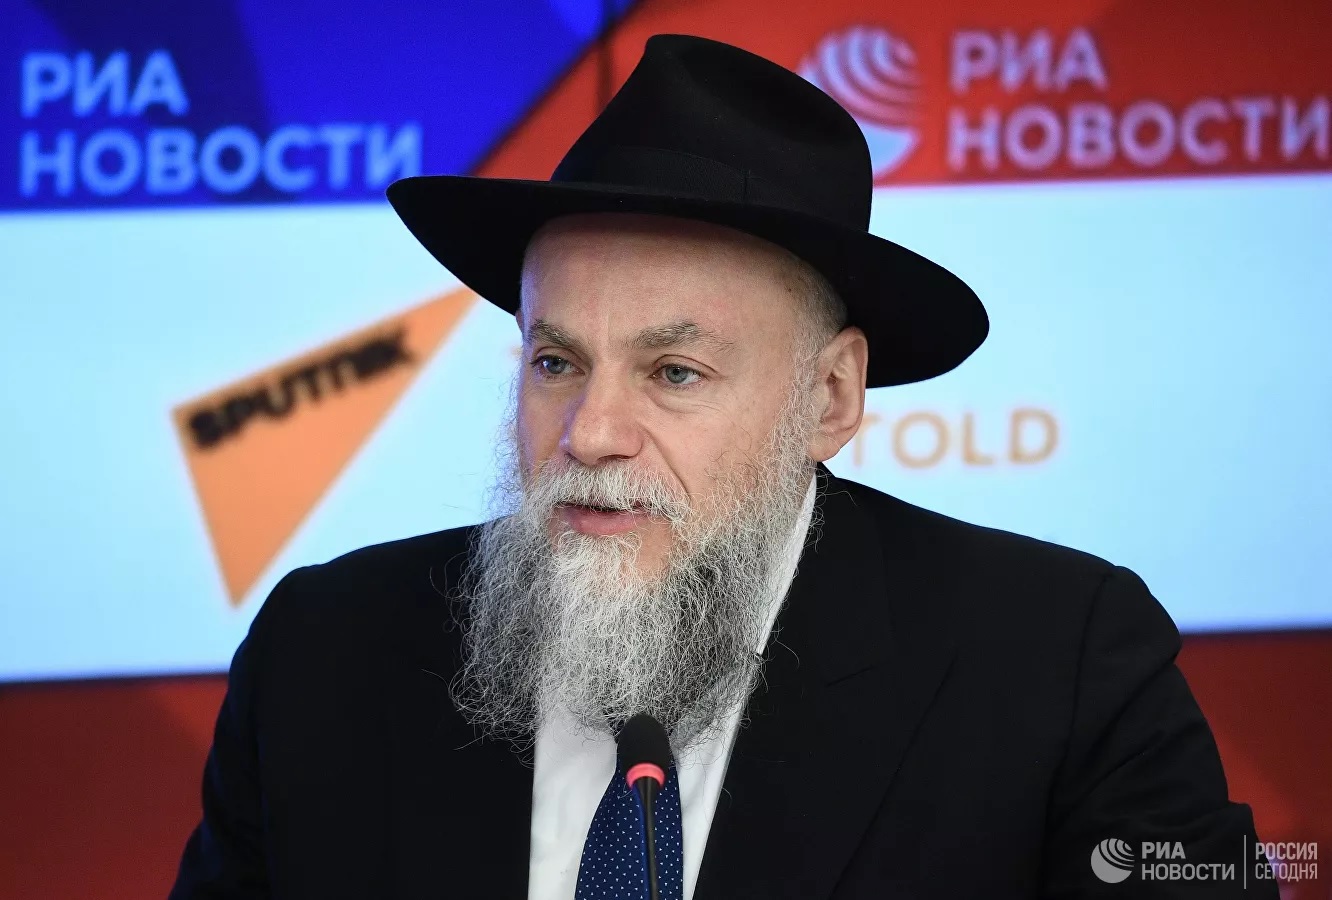 Раввин Борода: закон и здравый смысл - на защите синагог в России